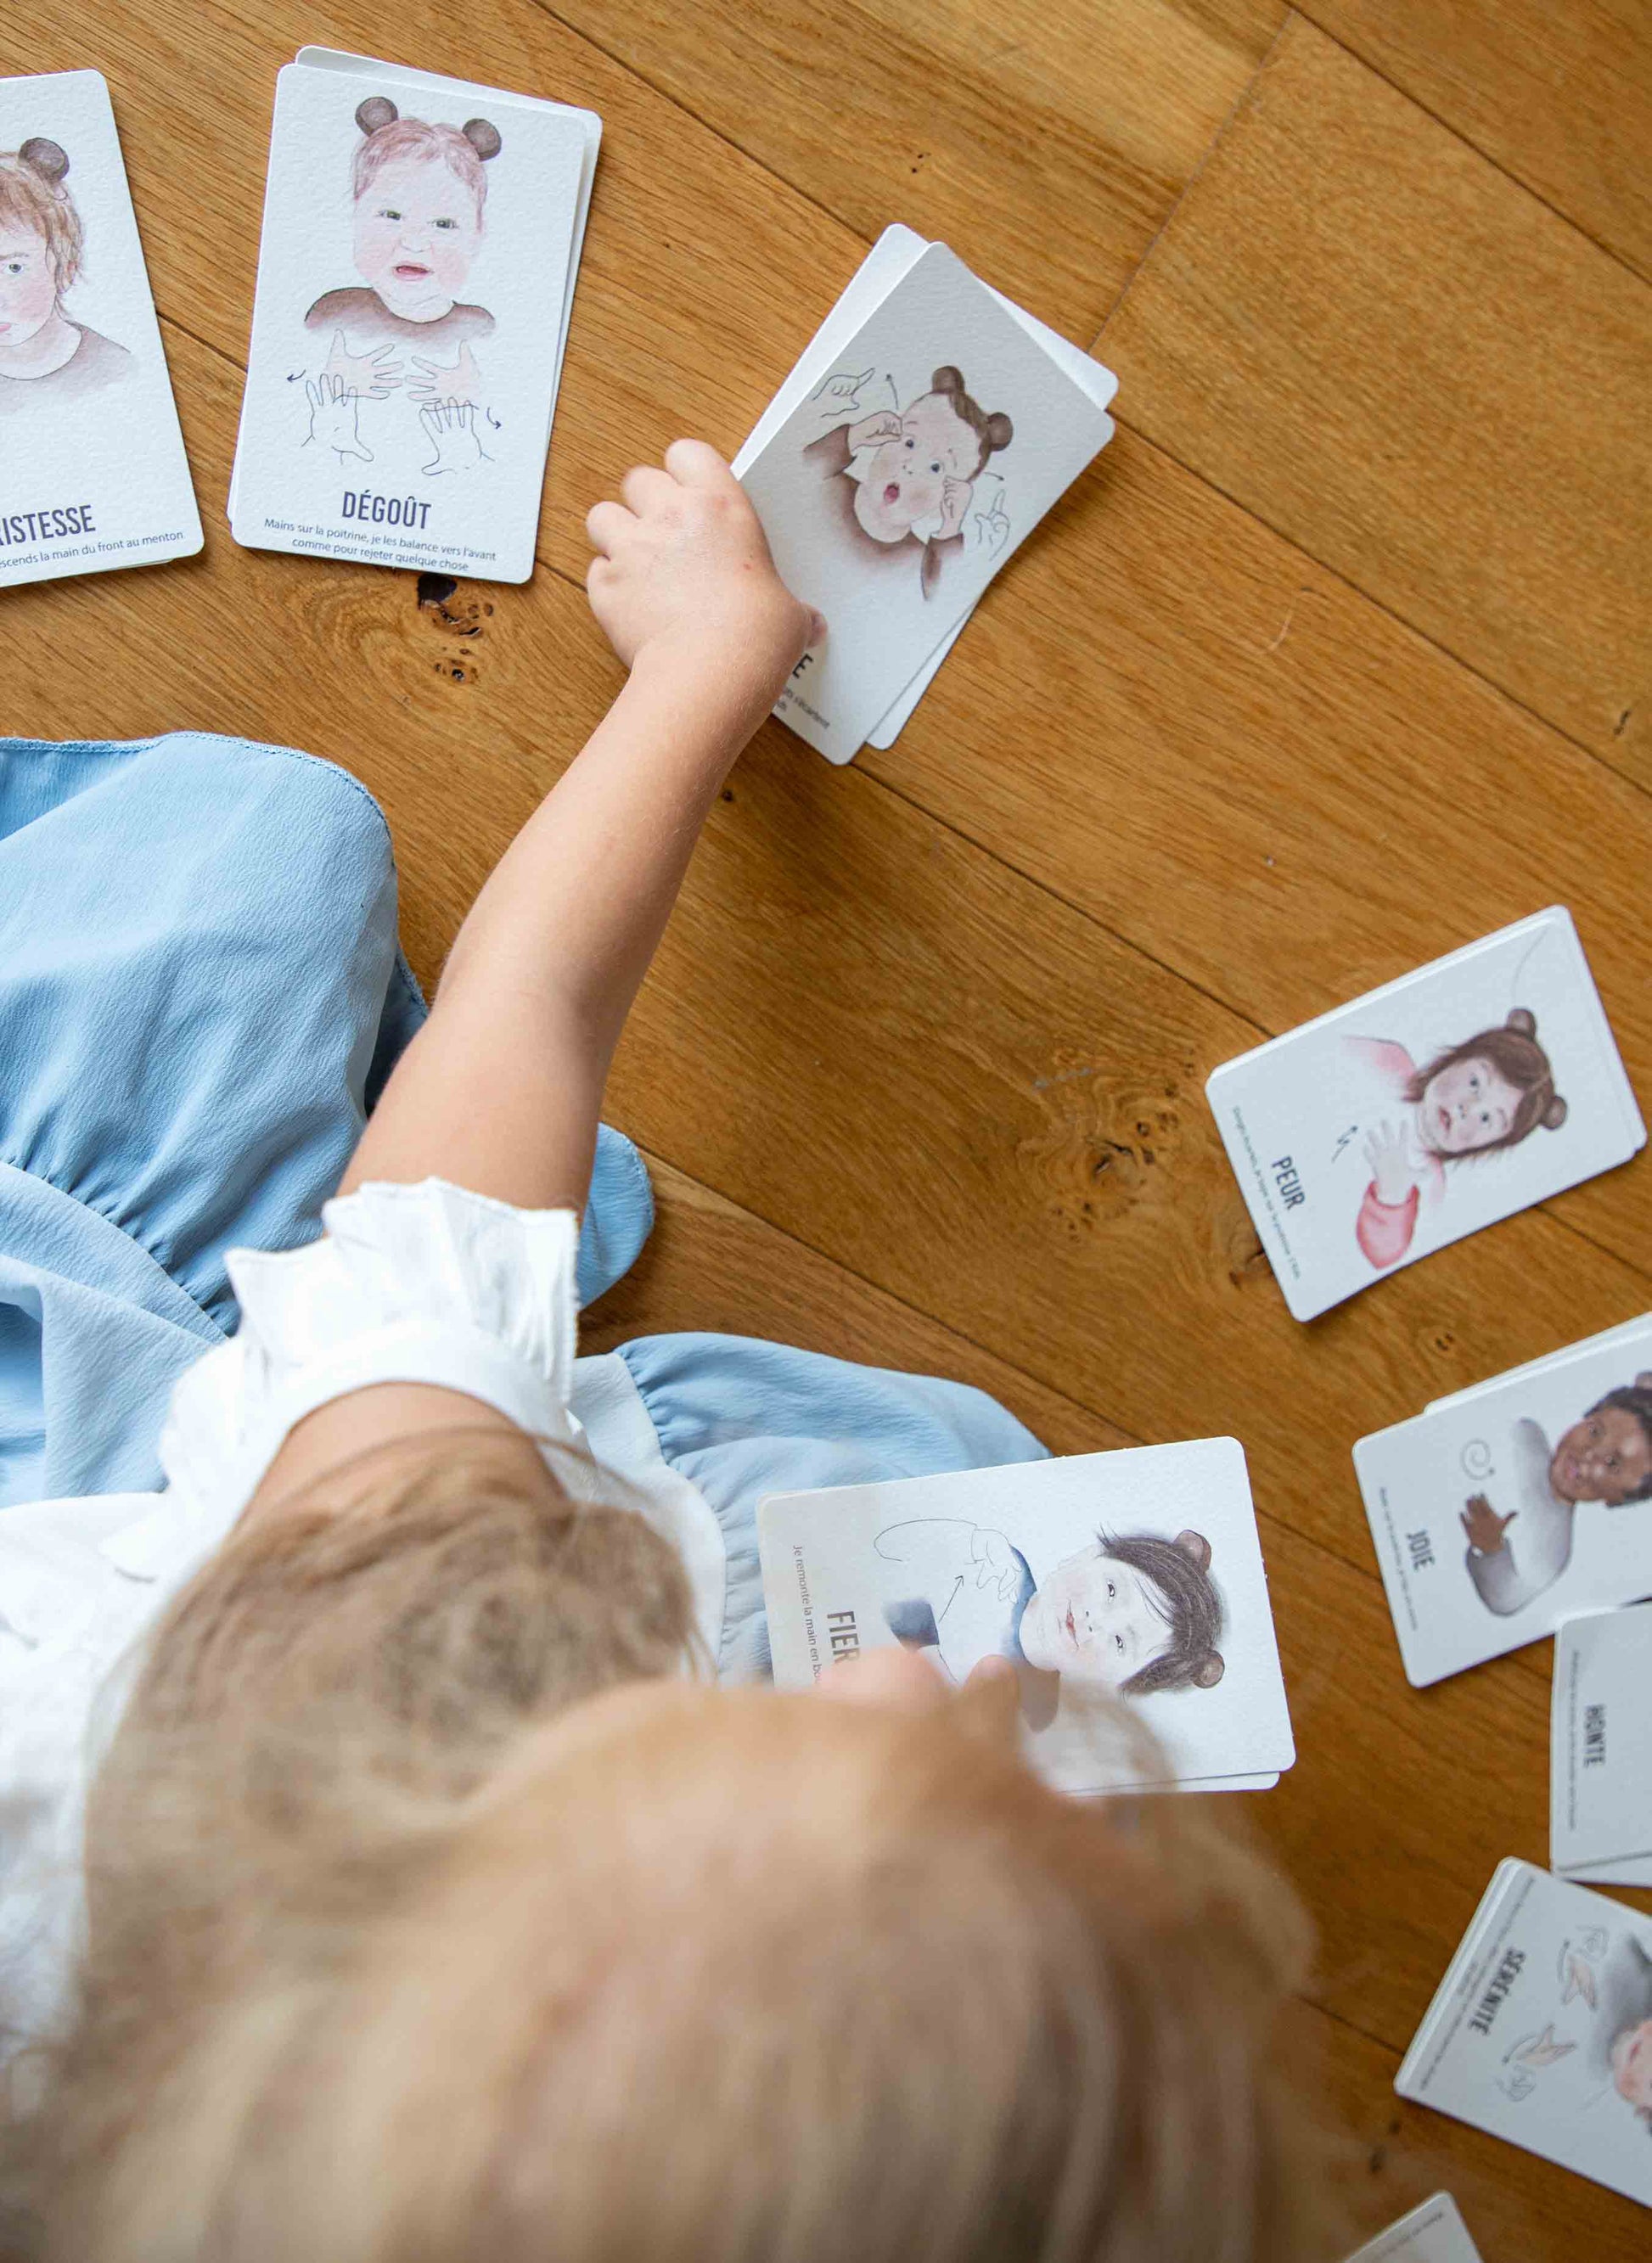 Enfant jouant avec les cartes "Signer avec Bébé" sur le sol.